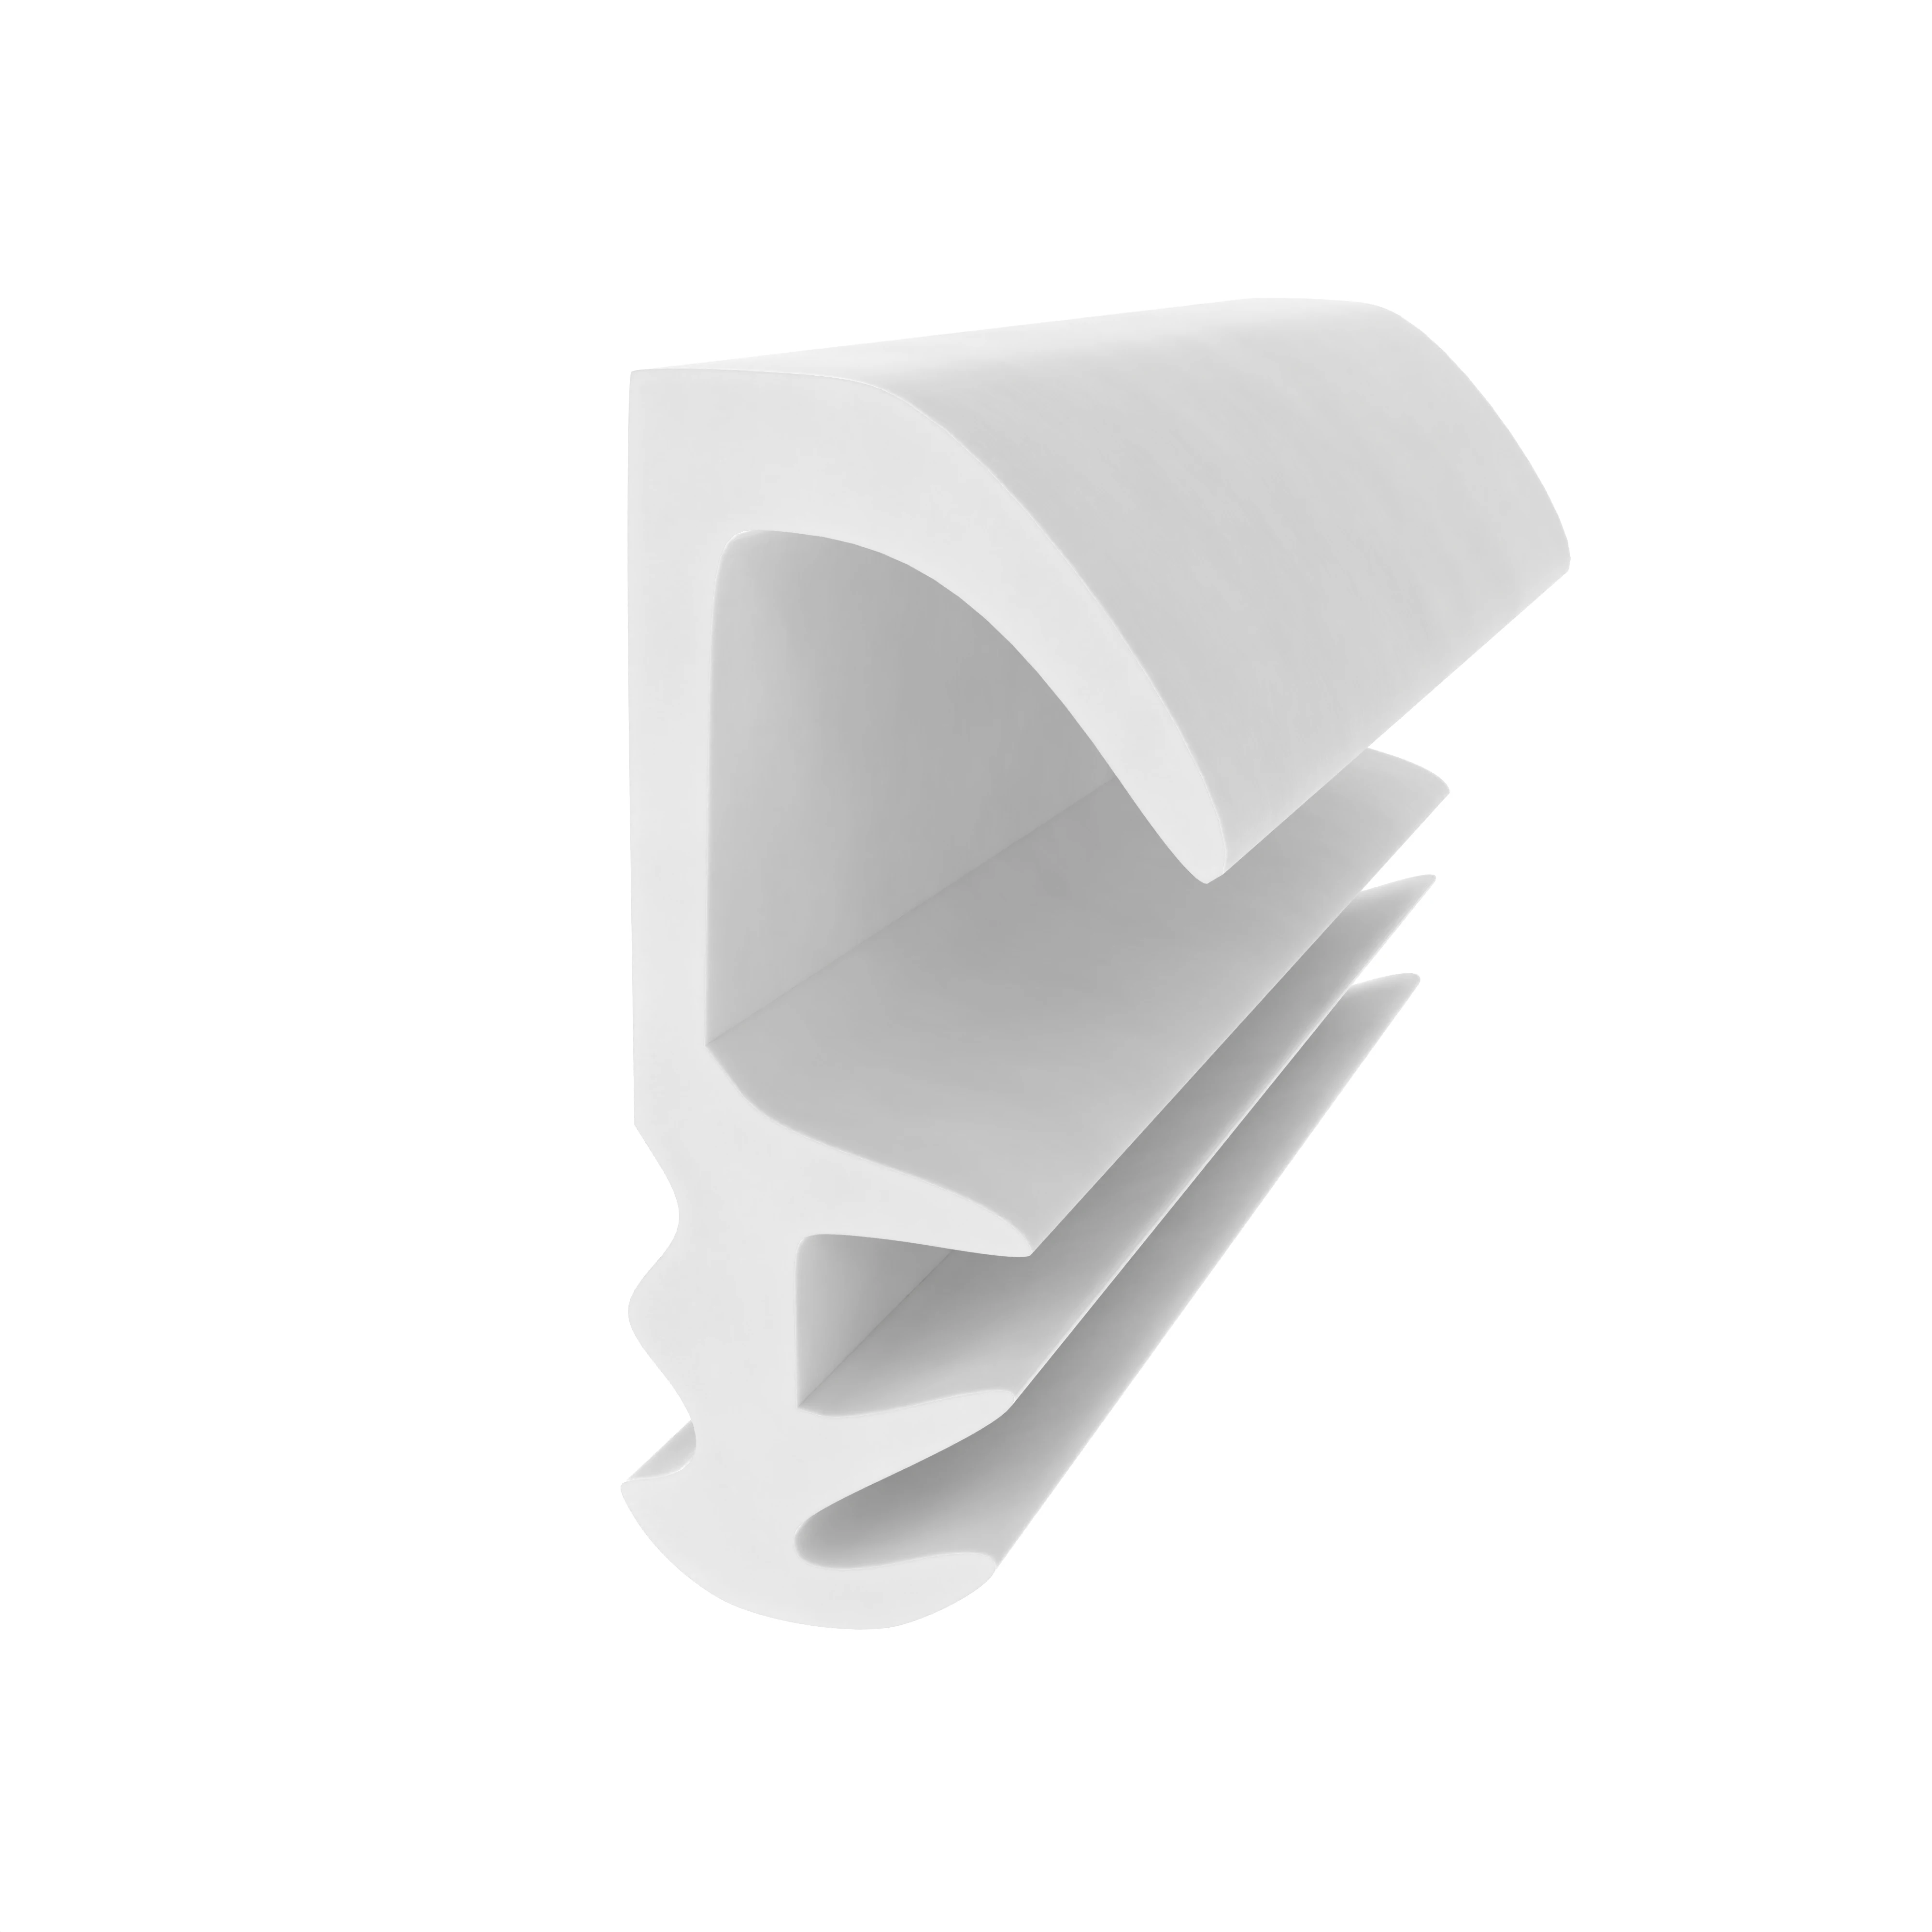 Flügelfalzdichtung für Holzzargen  | 8 mm Falzhöhe | Farbe: weiß